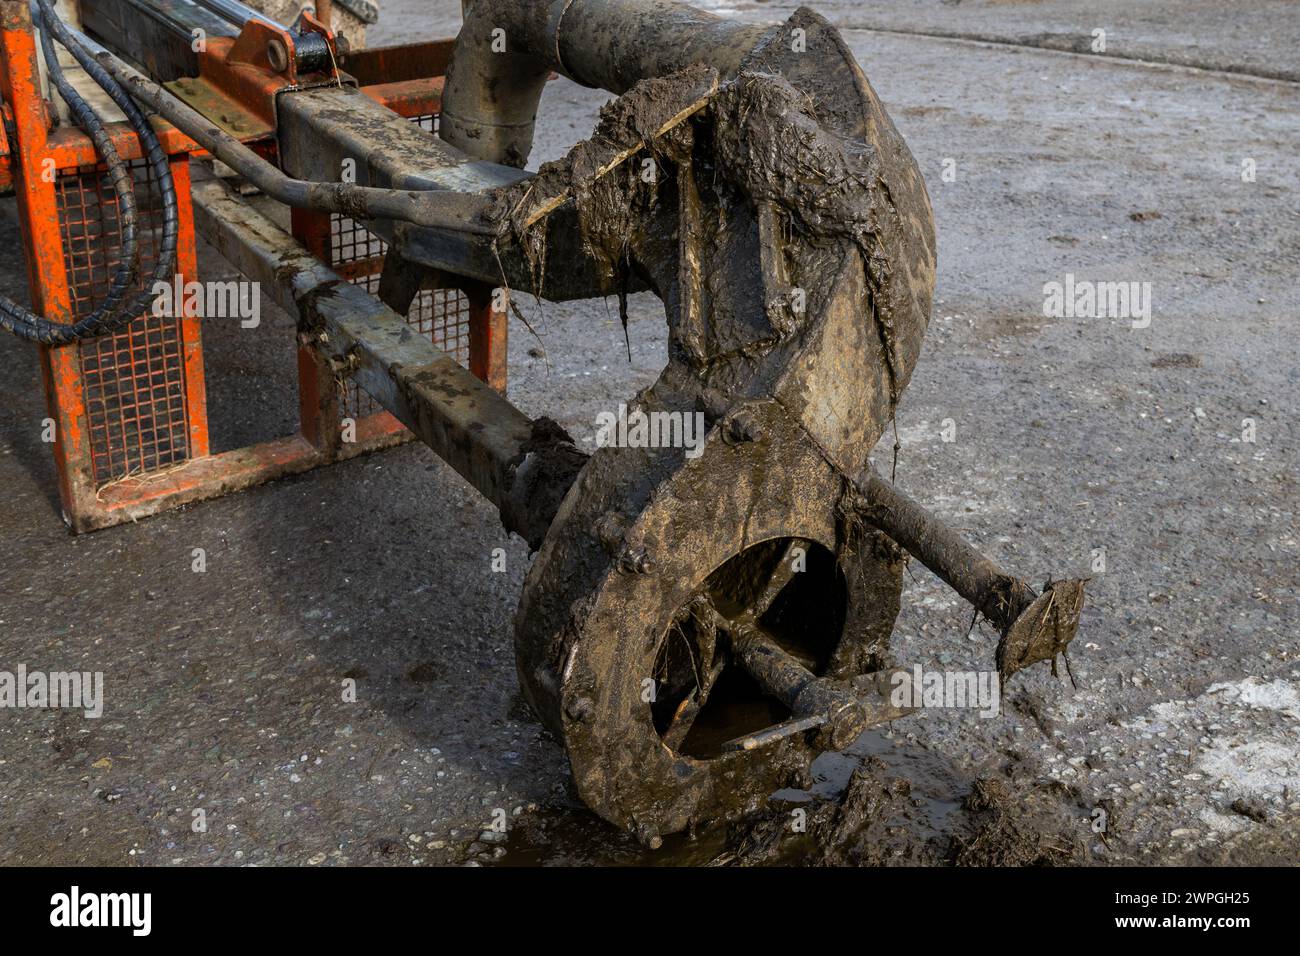 Primo piano di un agitatore per liquami sul retro di un trattore John Deere, Irlanda. Foto Stock